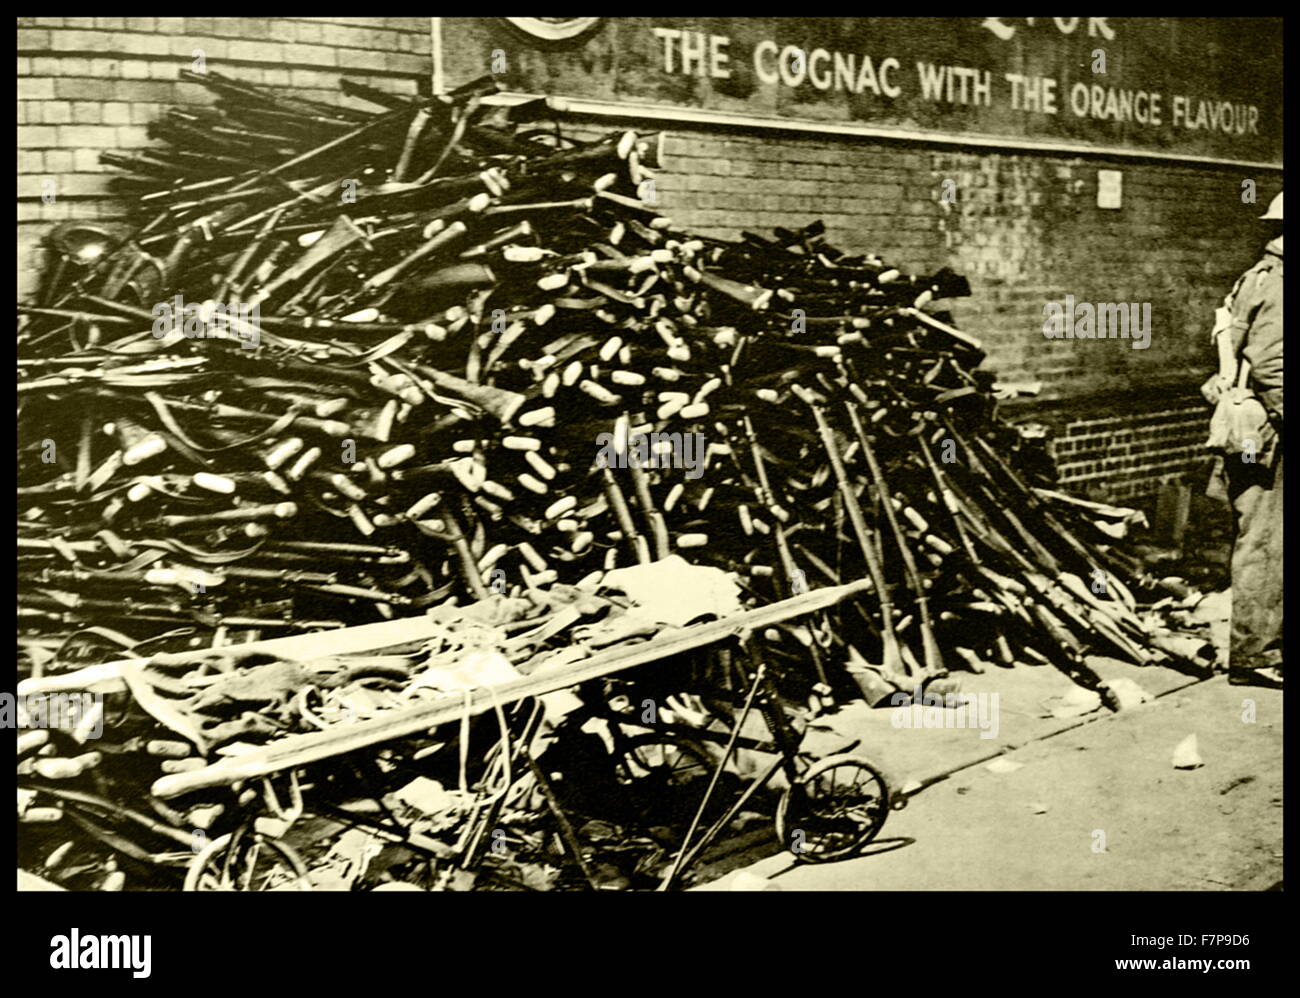 Hunderte von Gewehre sind auf dem Kai von Dover, England gezeigt. Englische Truppen bewaffnen sich vor der Abfahrt in Richtung Frankreich. Datiert 1940. Stockfoto